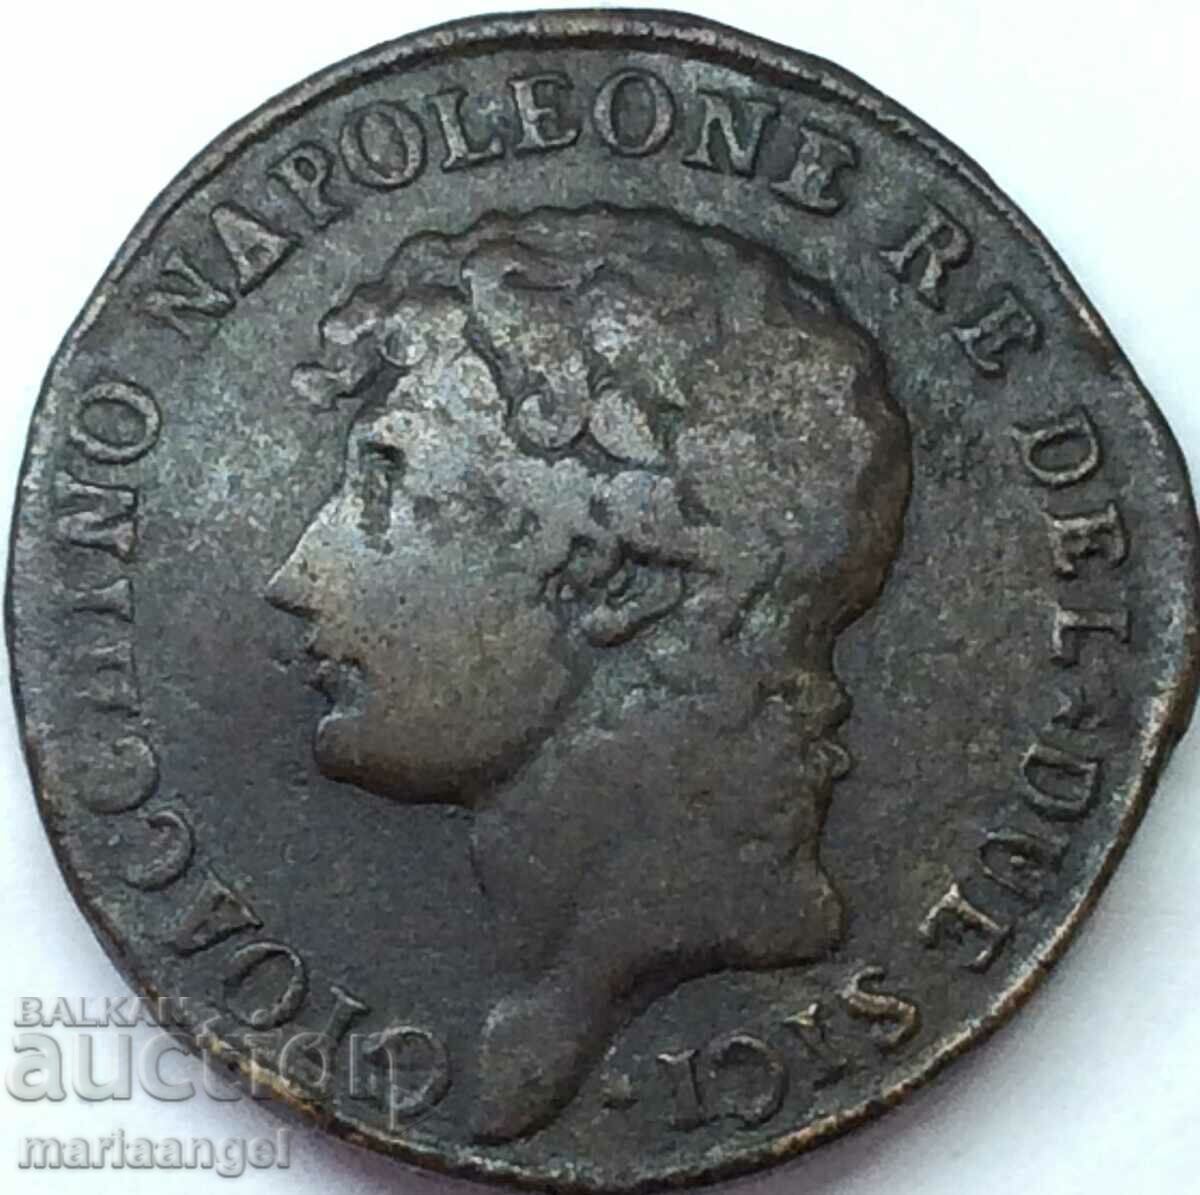 Murat Napoleon 2 grains 1810 Italy 29mm 11.67g bronze